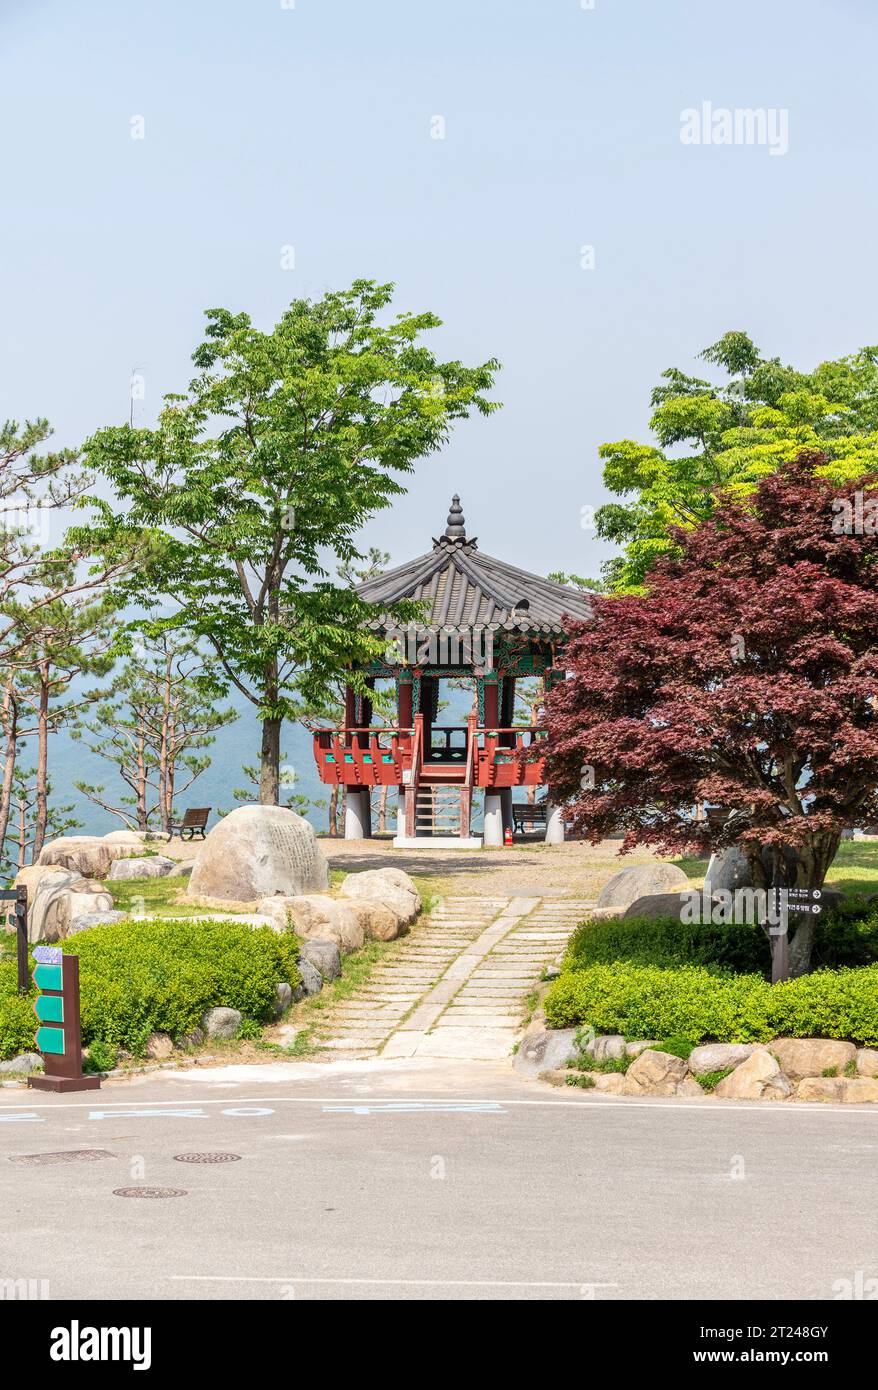 Dies ist ein traditioneller koreanischer Pavillon in einem Park Stockfoto